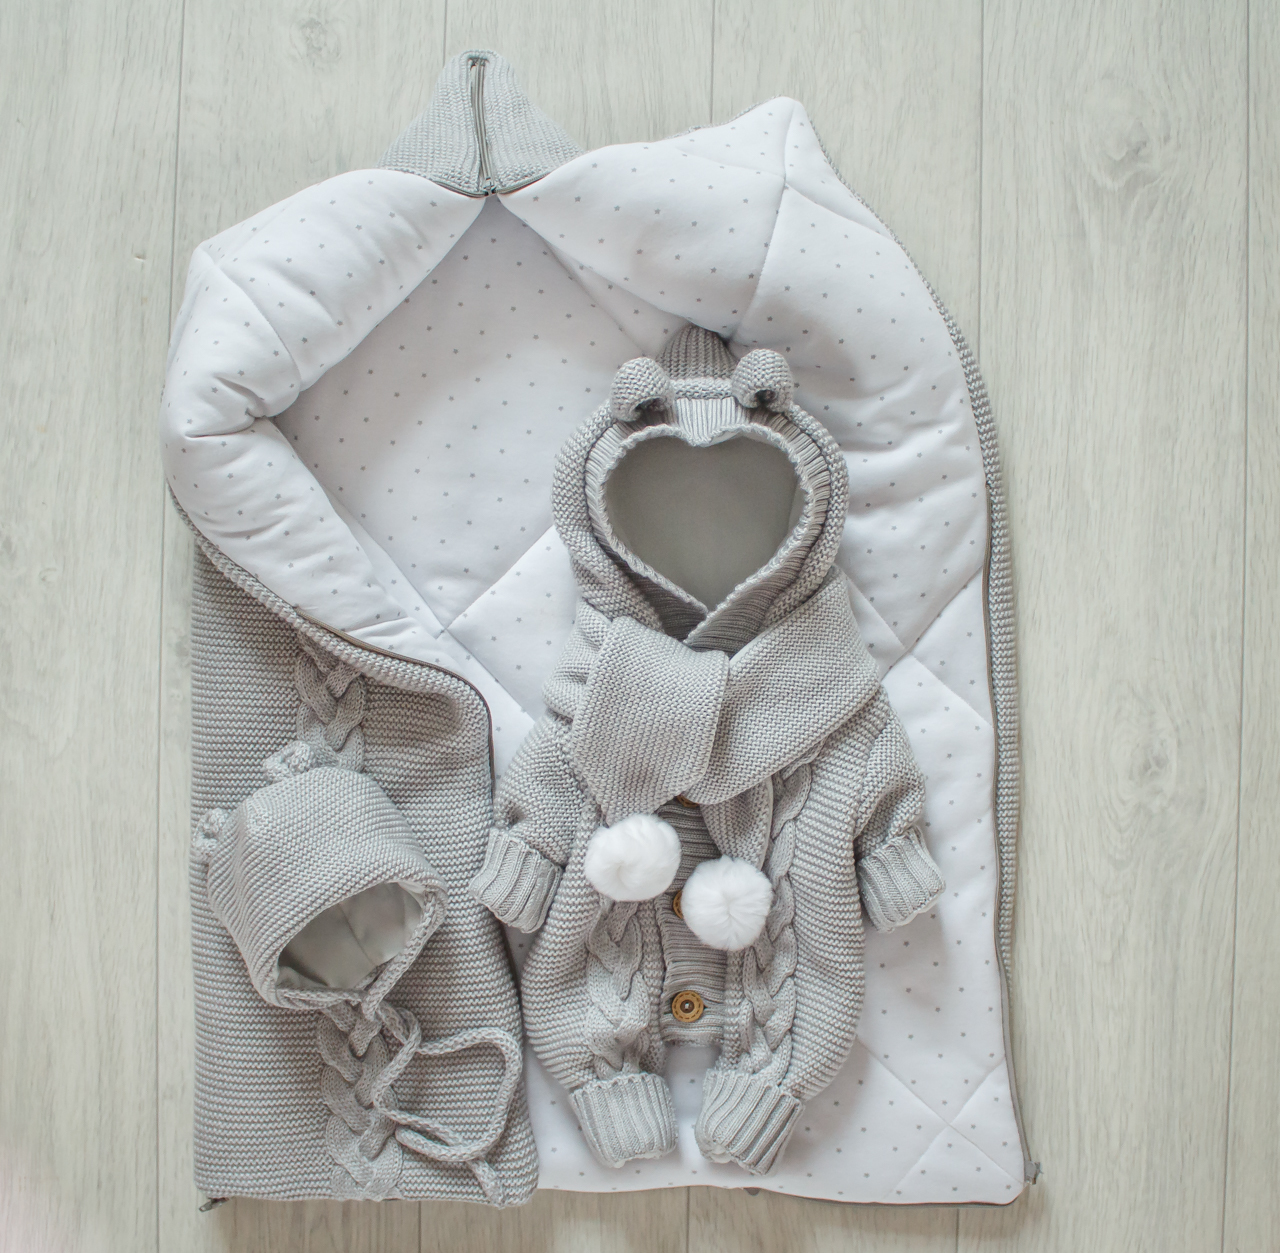 Одеяло-трансформер/конверт на выписку для новорожденного своими руками. Автор Ольга Максимова | VK